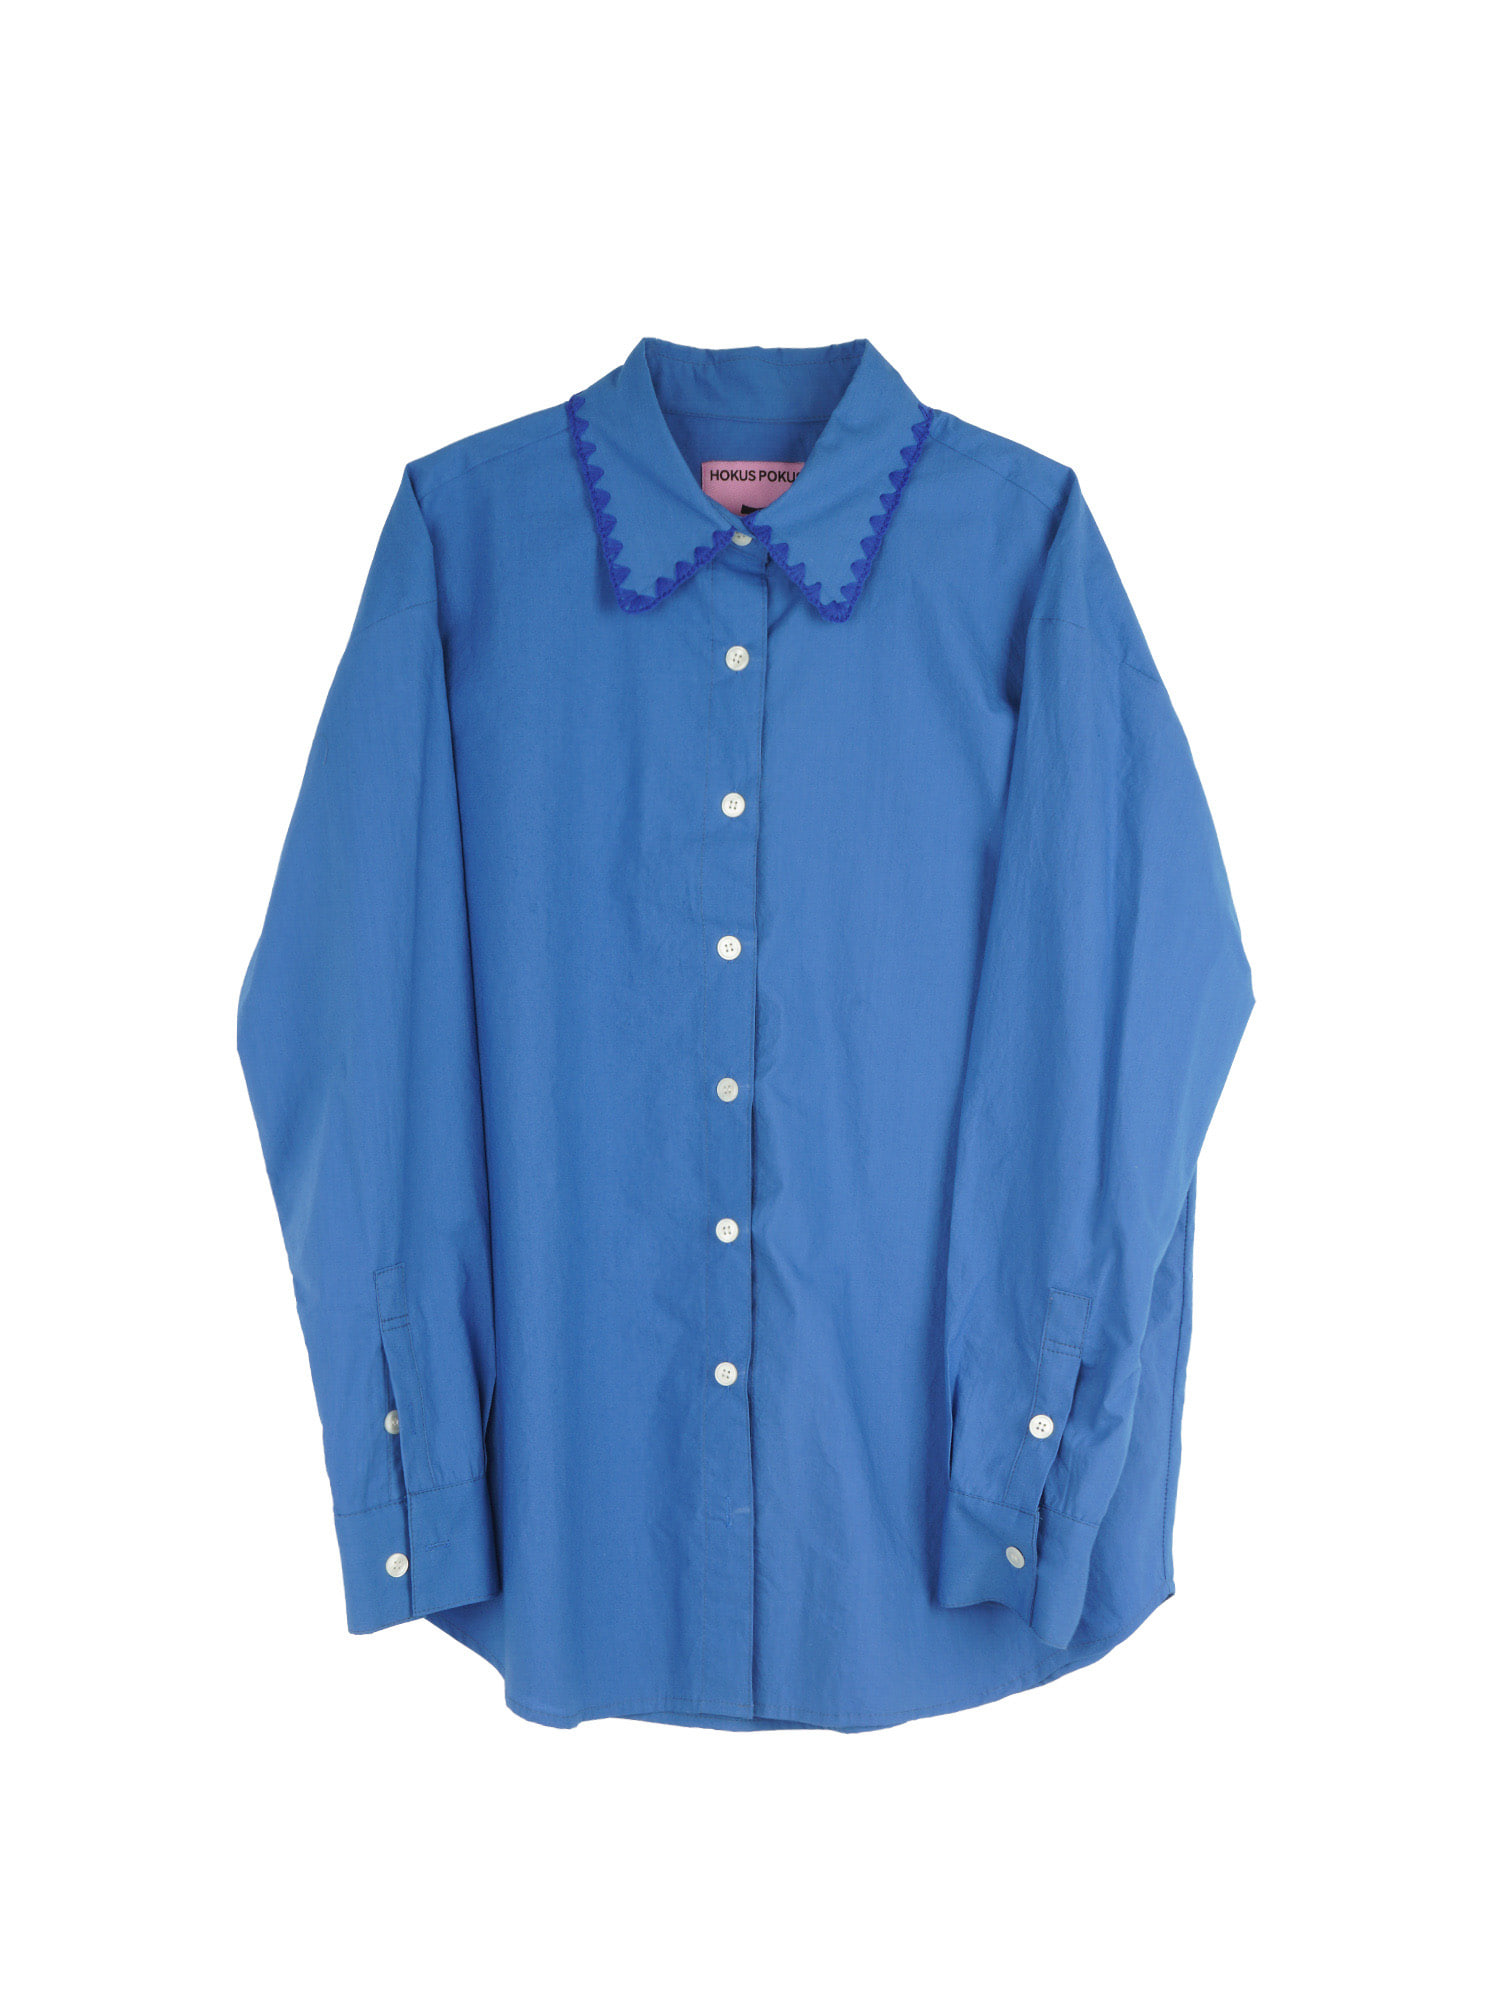 Embroidery Crochet Collar Overfit Shirt - Blue